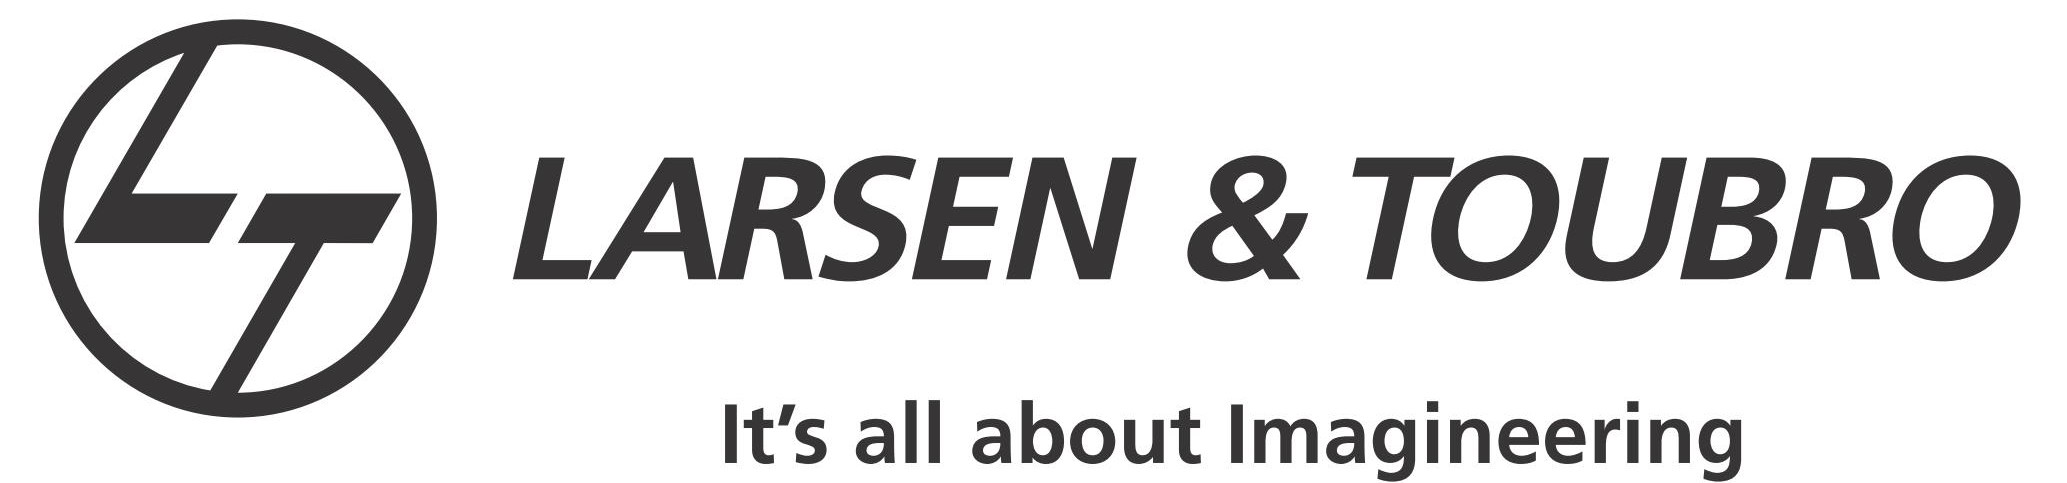 Larsen & Toubro Limited Logo photo - 1